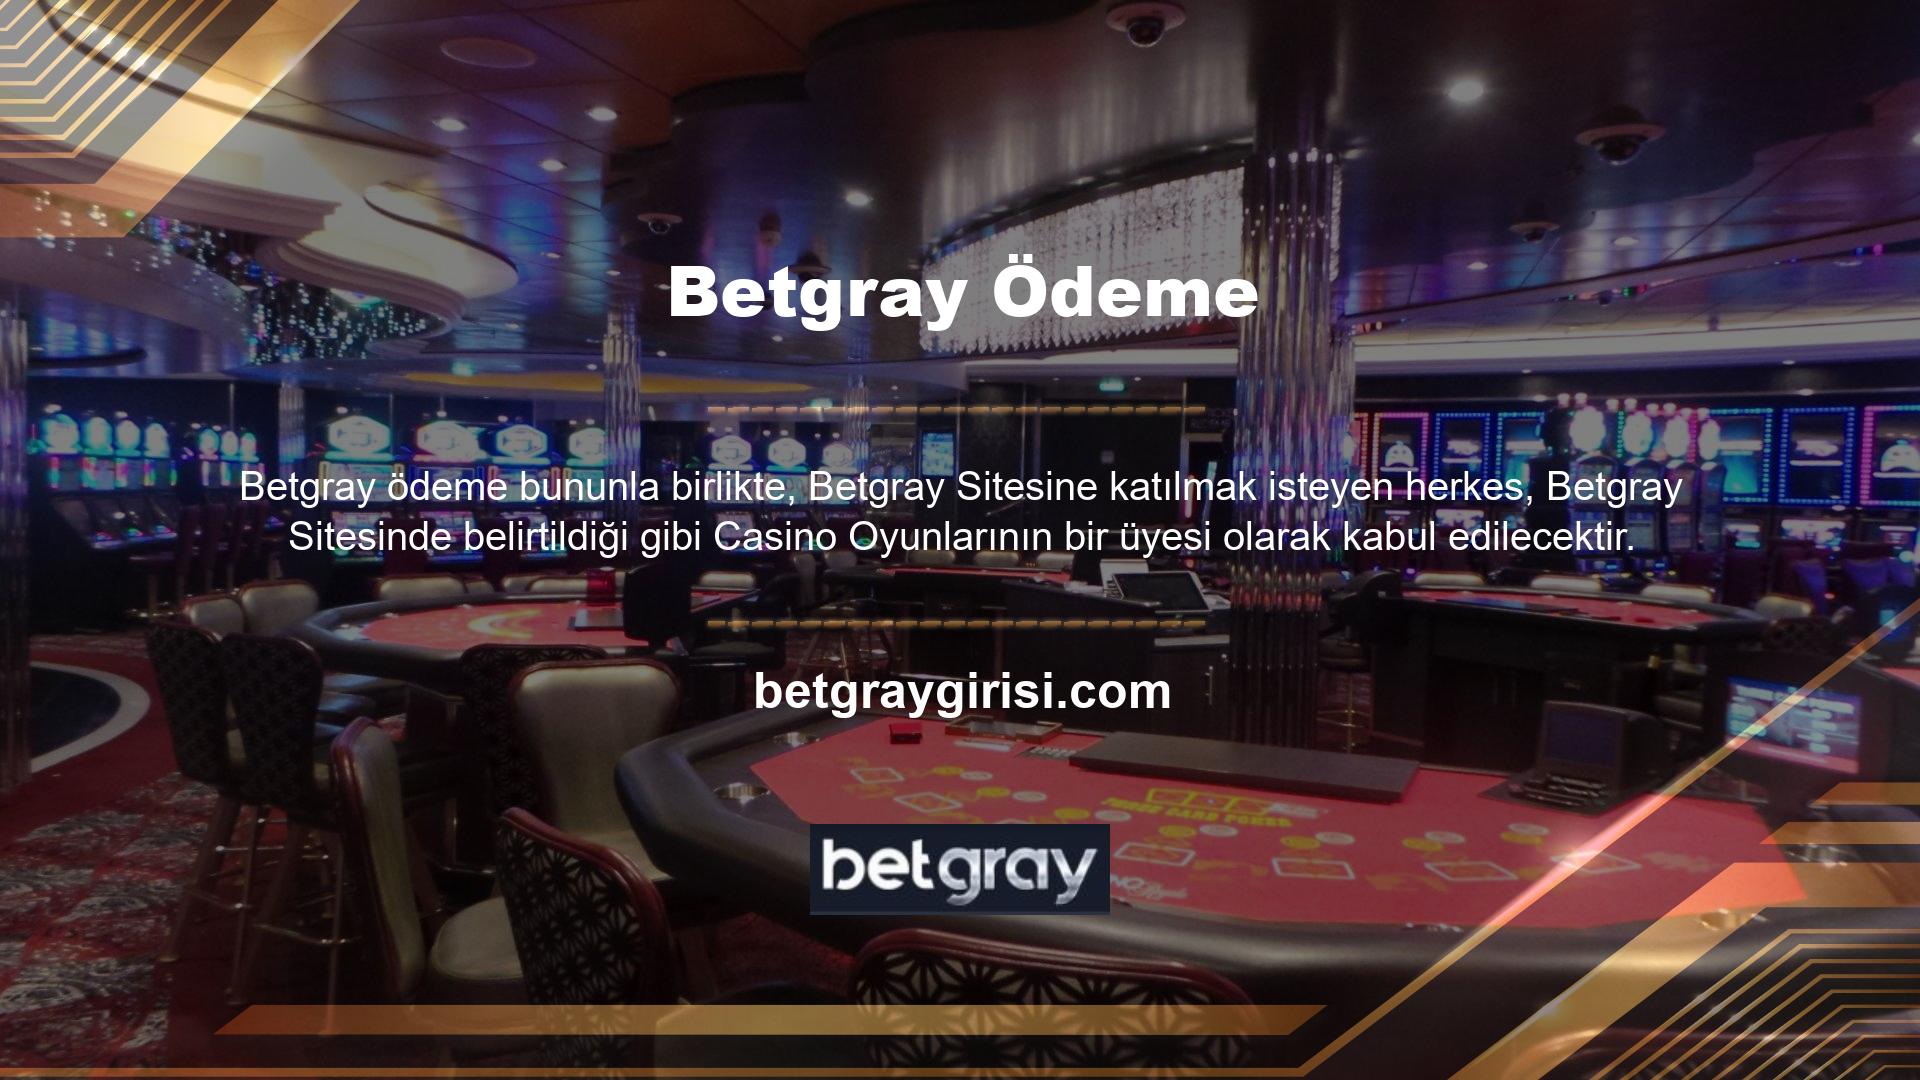 Bunun nedeni Betgray web sitesinin cömert casino maç bonusları sağlamasıdır